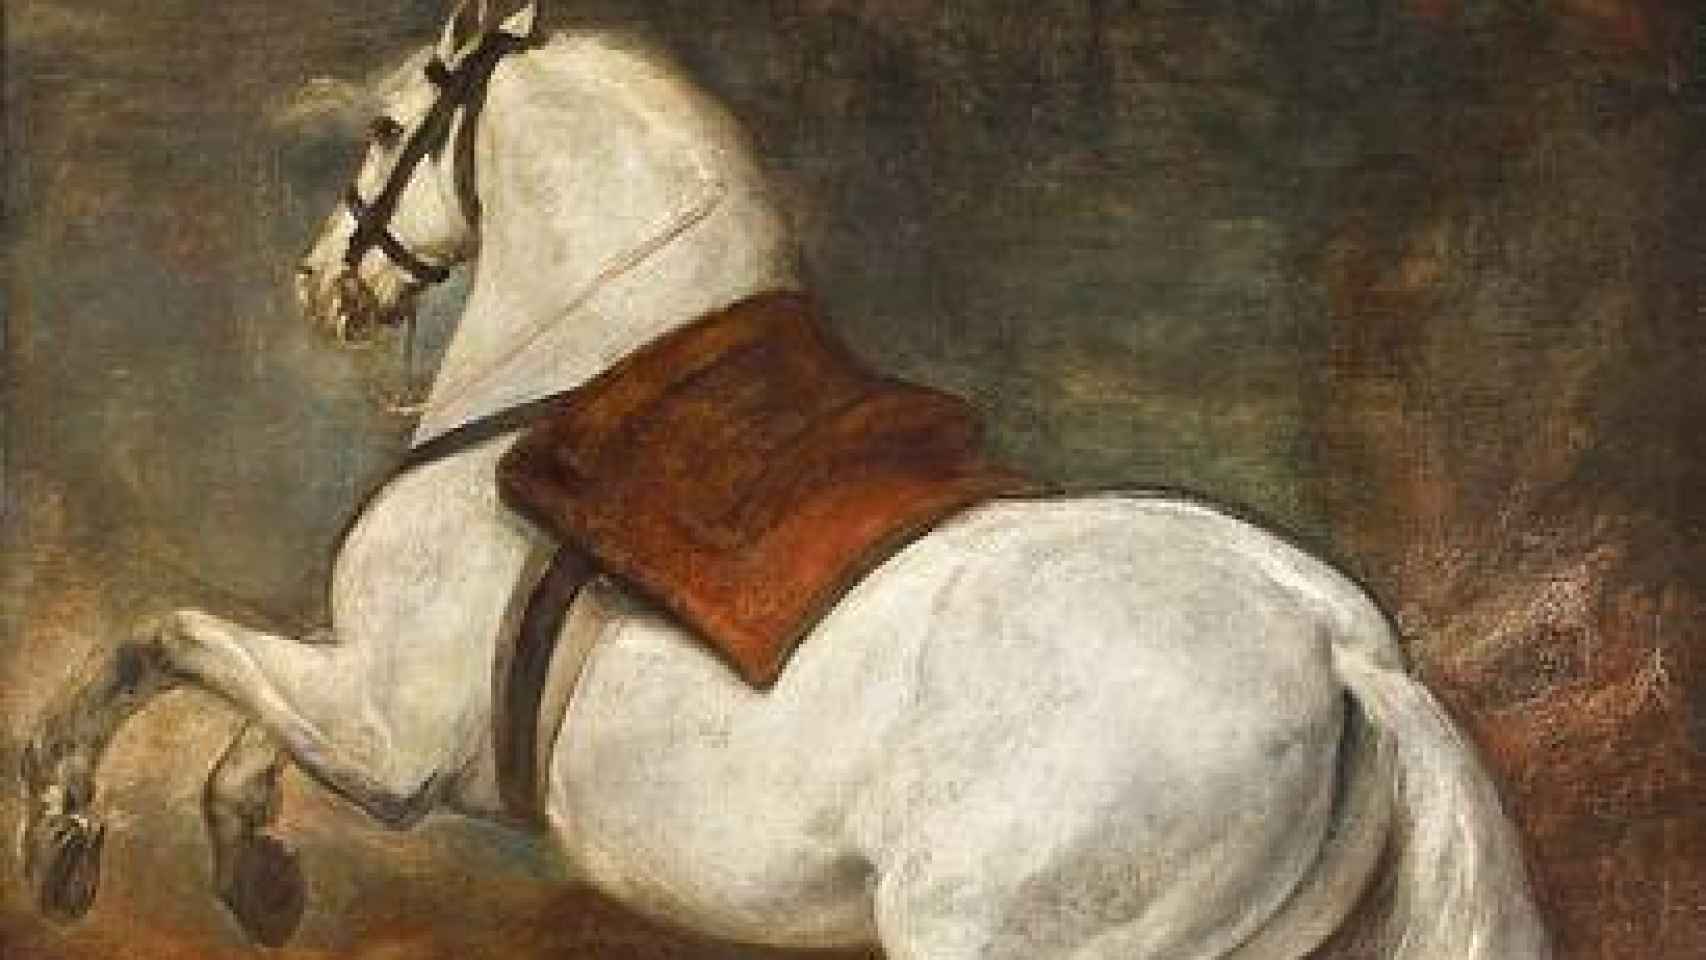 Felipe IV fue el rey coleccionista, pero para ver su ambición hay que ir al Museo del Prado. Aquí destaca la presencia de Diego Velázquez por “el espectacular” lienzo del Caballo blanco.